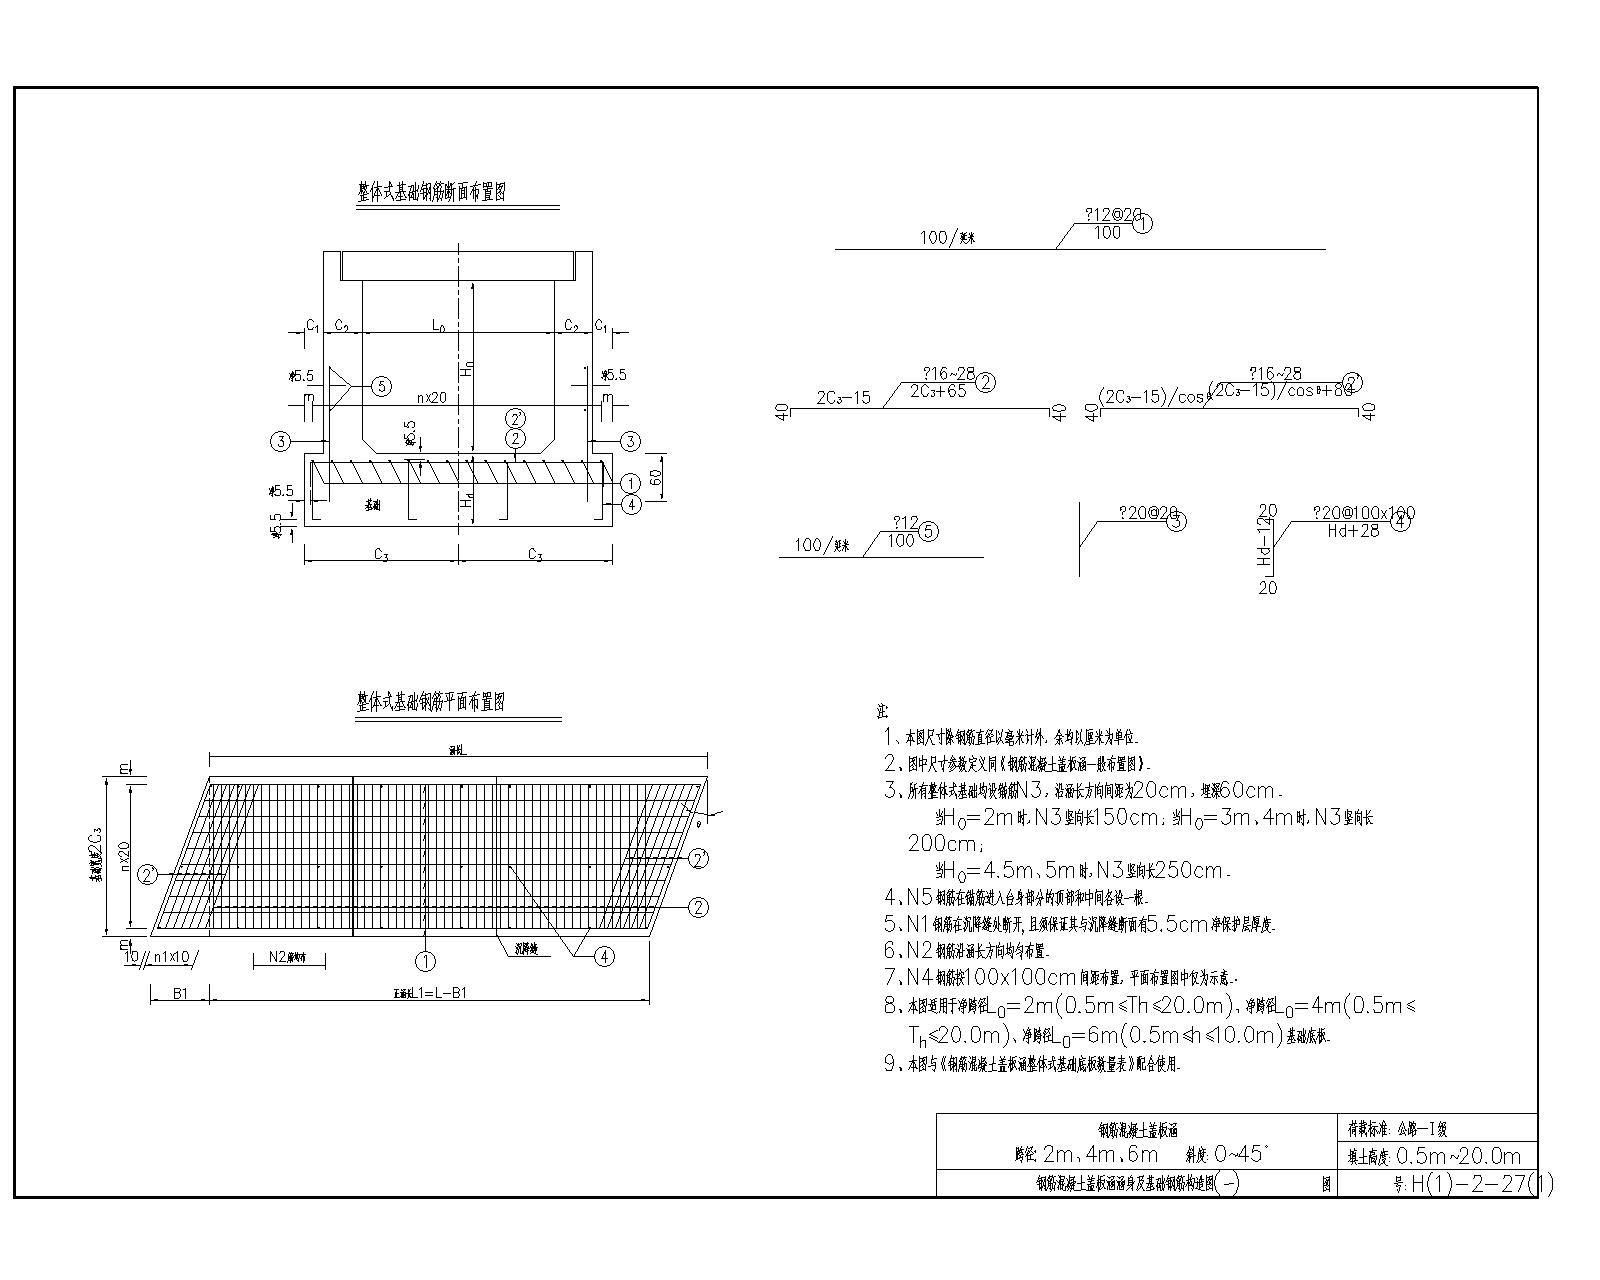 钢筋混凝土盖板涵标准图全套图-钢筋混凝土盖板涵涵身及基础钢筋构造图(一)